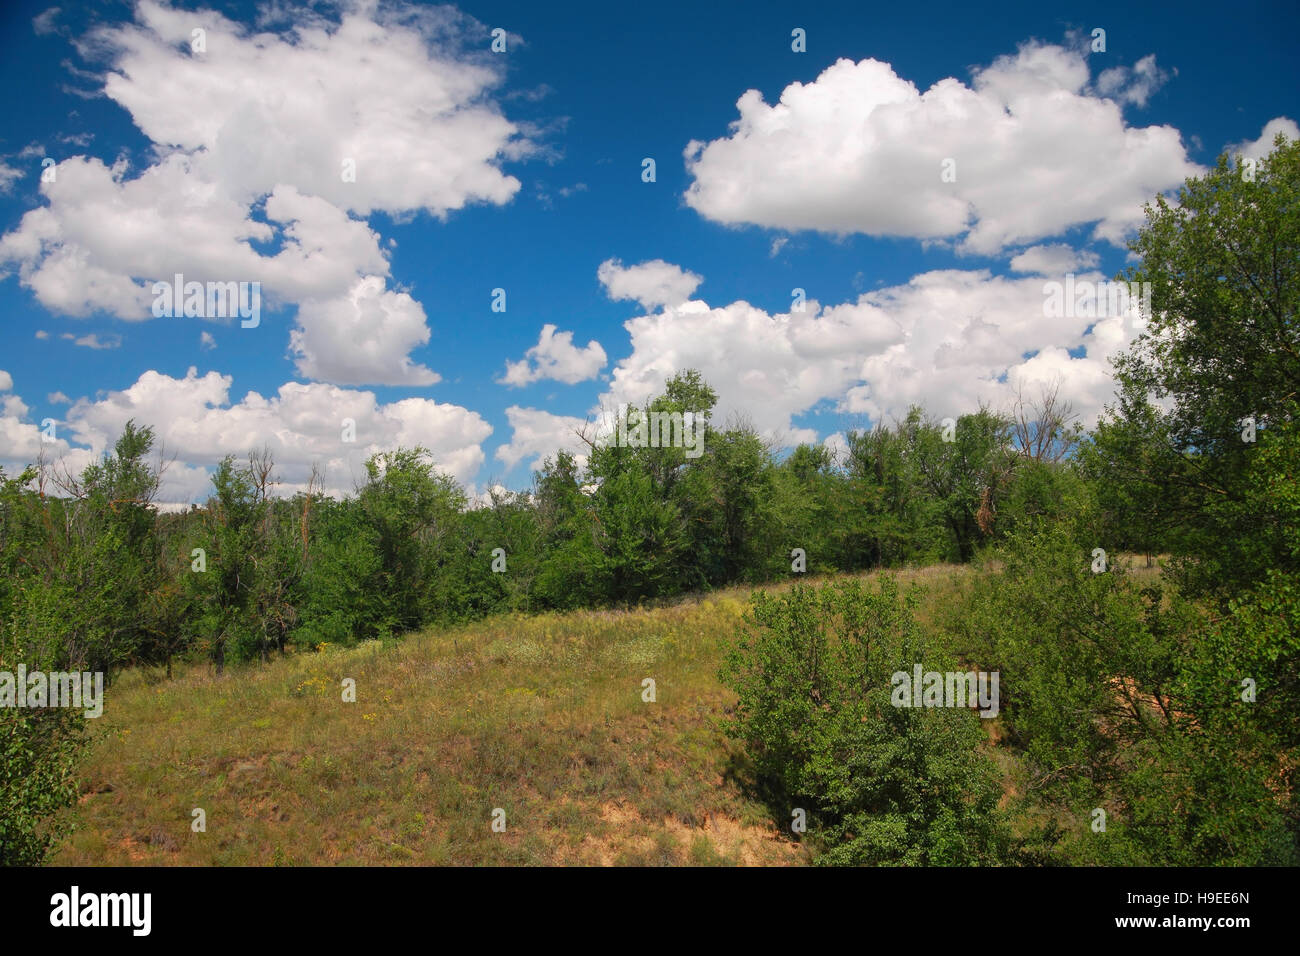 Paesaggio rurale, alberi, prati e cielo blu con nuvole Foto Stock